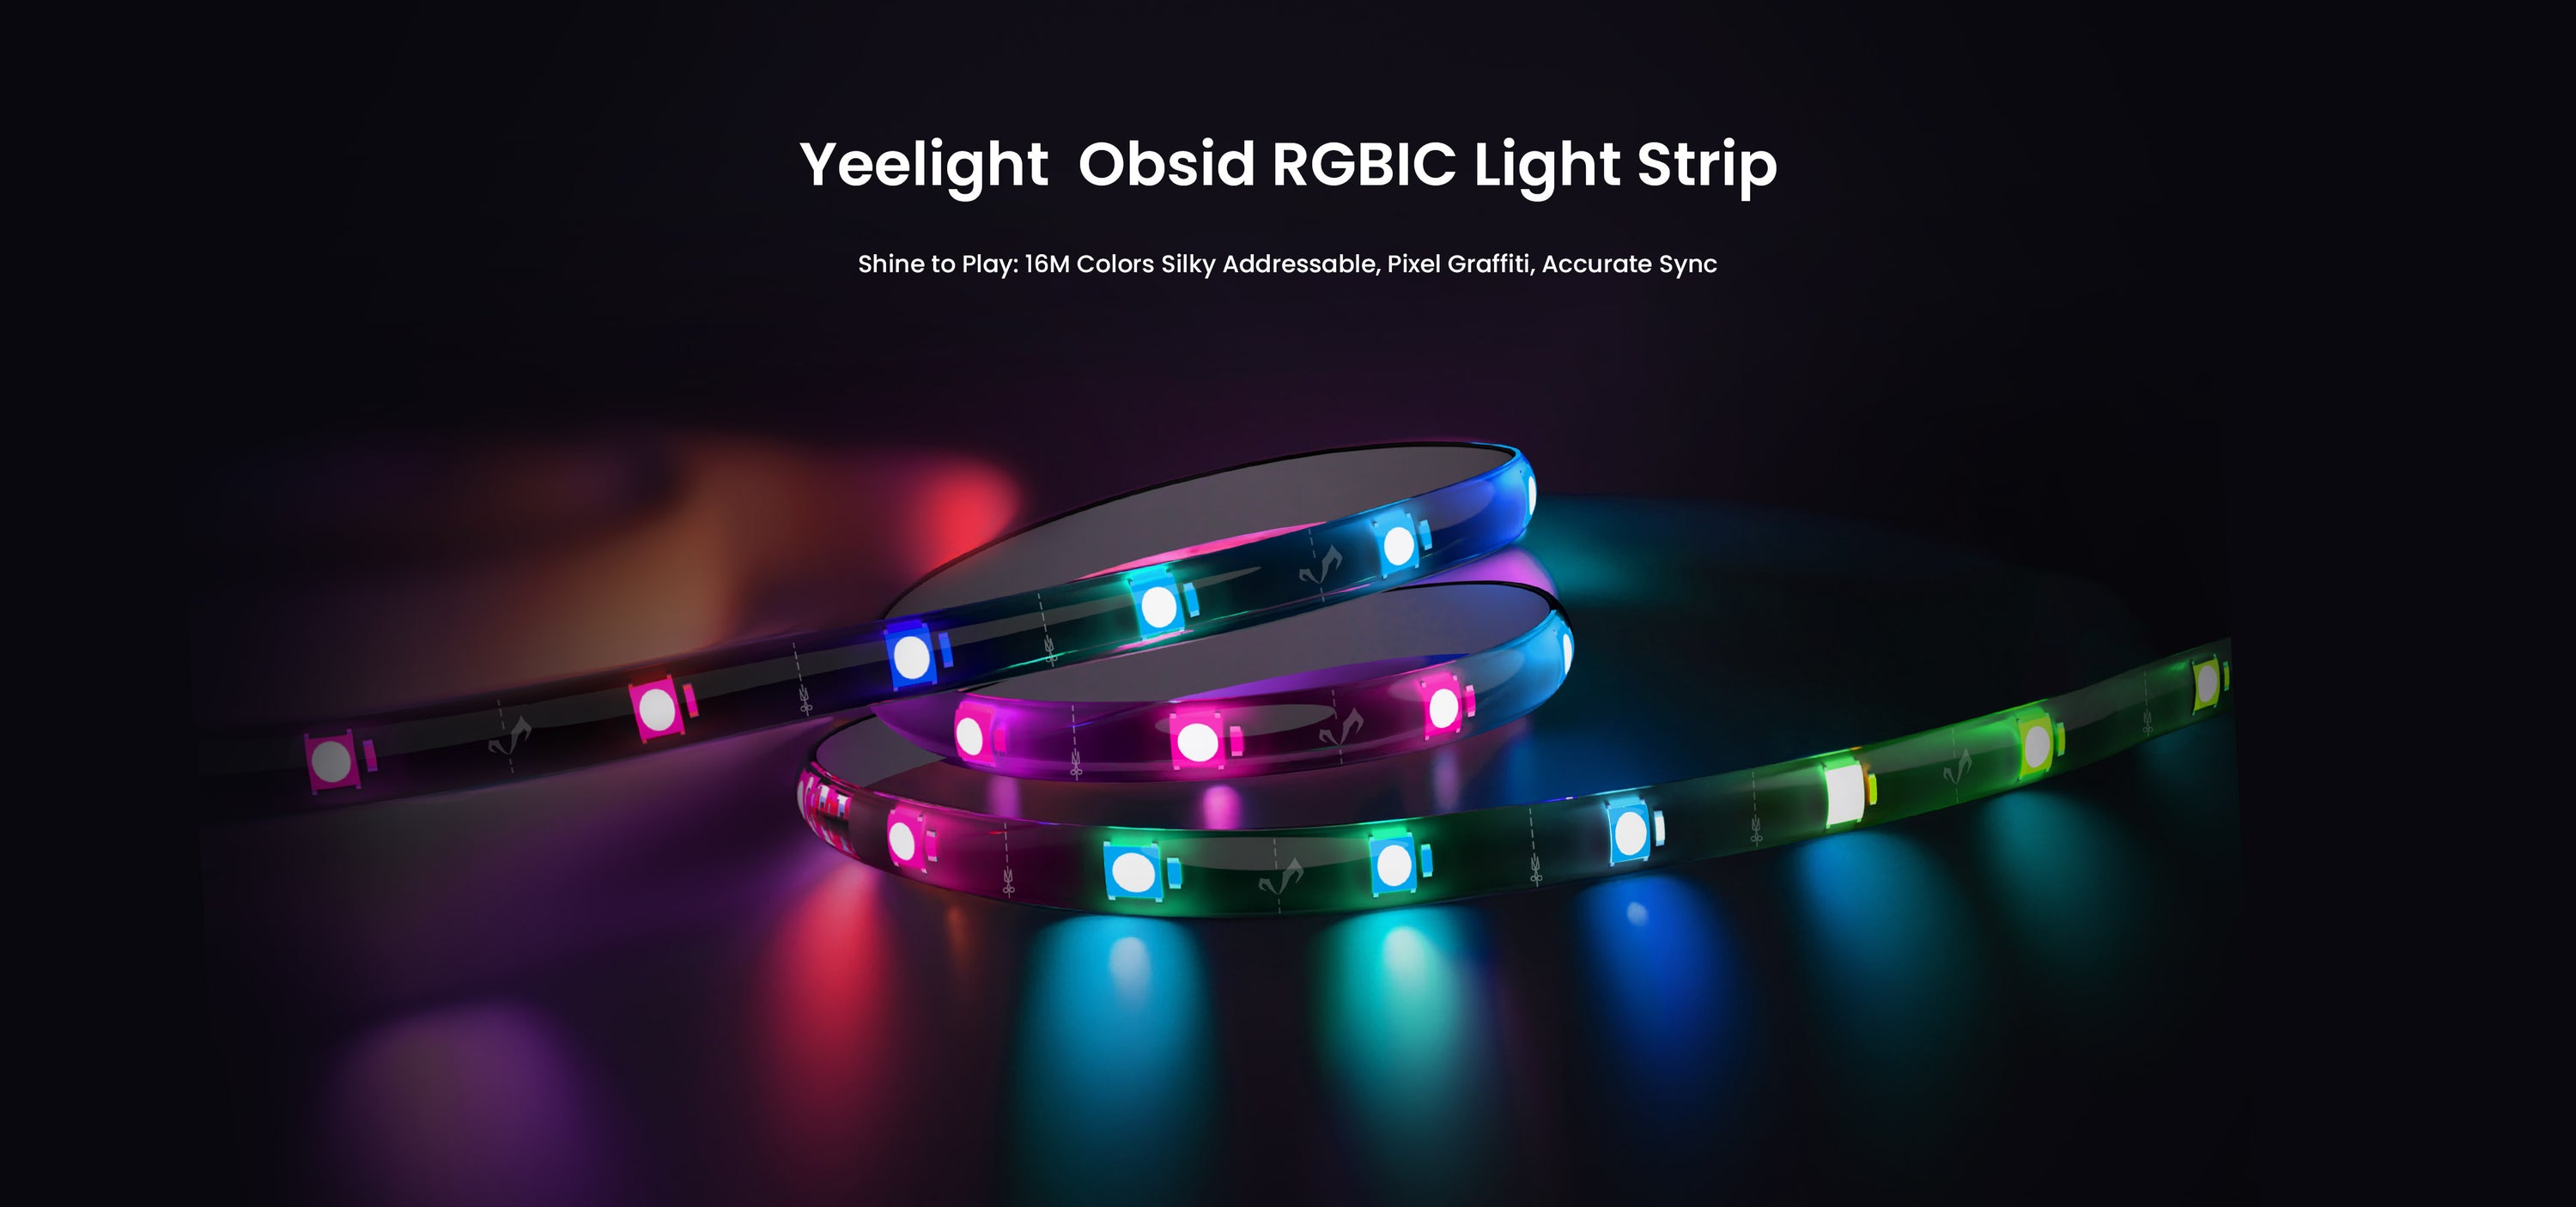 Yeelight ha annunciato la striscia luminosa LED Obsid RGBIC, che può sincronizzarsi con musica e giochi